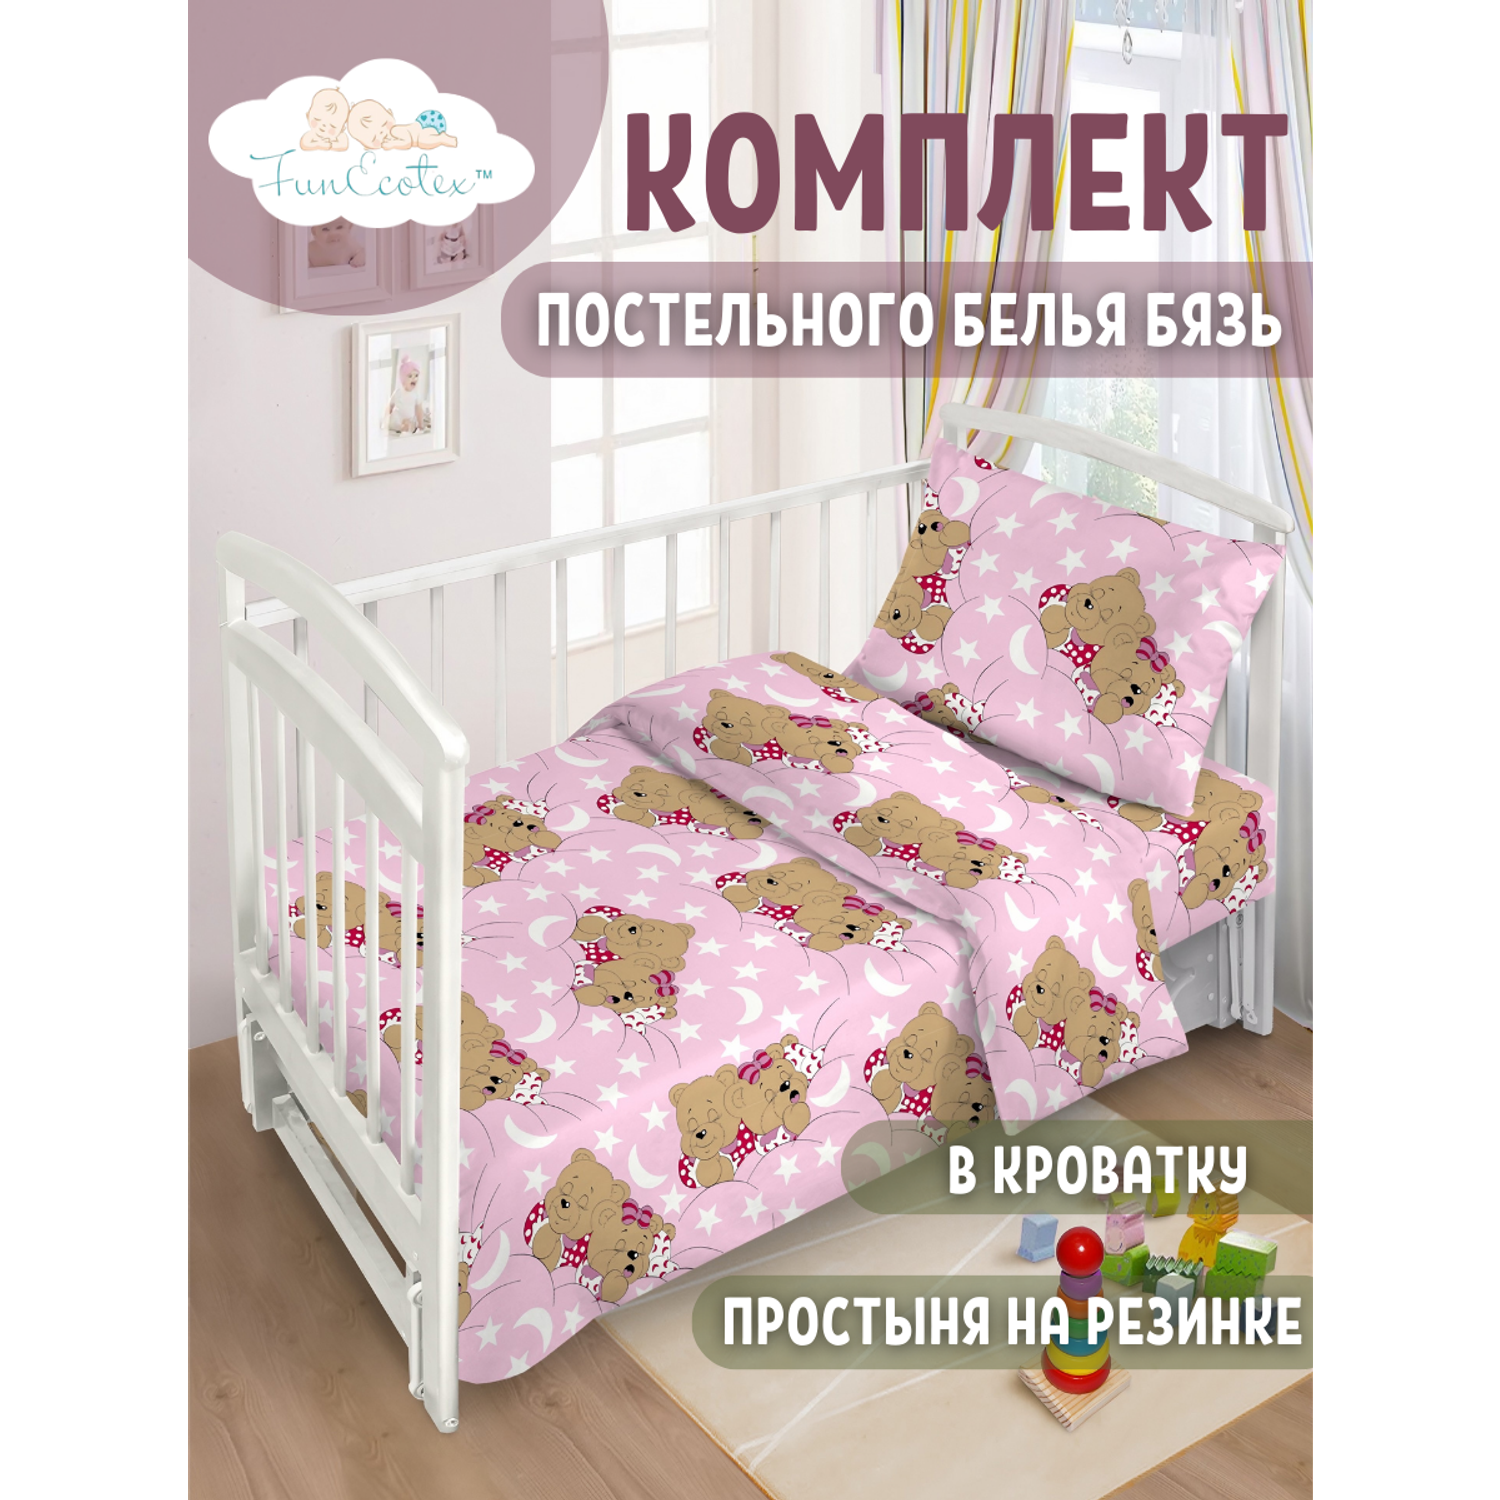 Постельное белье FunEcotex детское в кроватку с простыней на резинке 3 предмета - фото 1